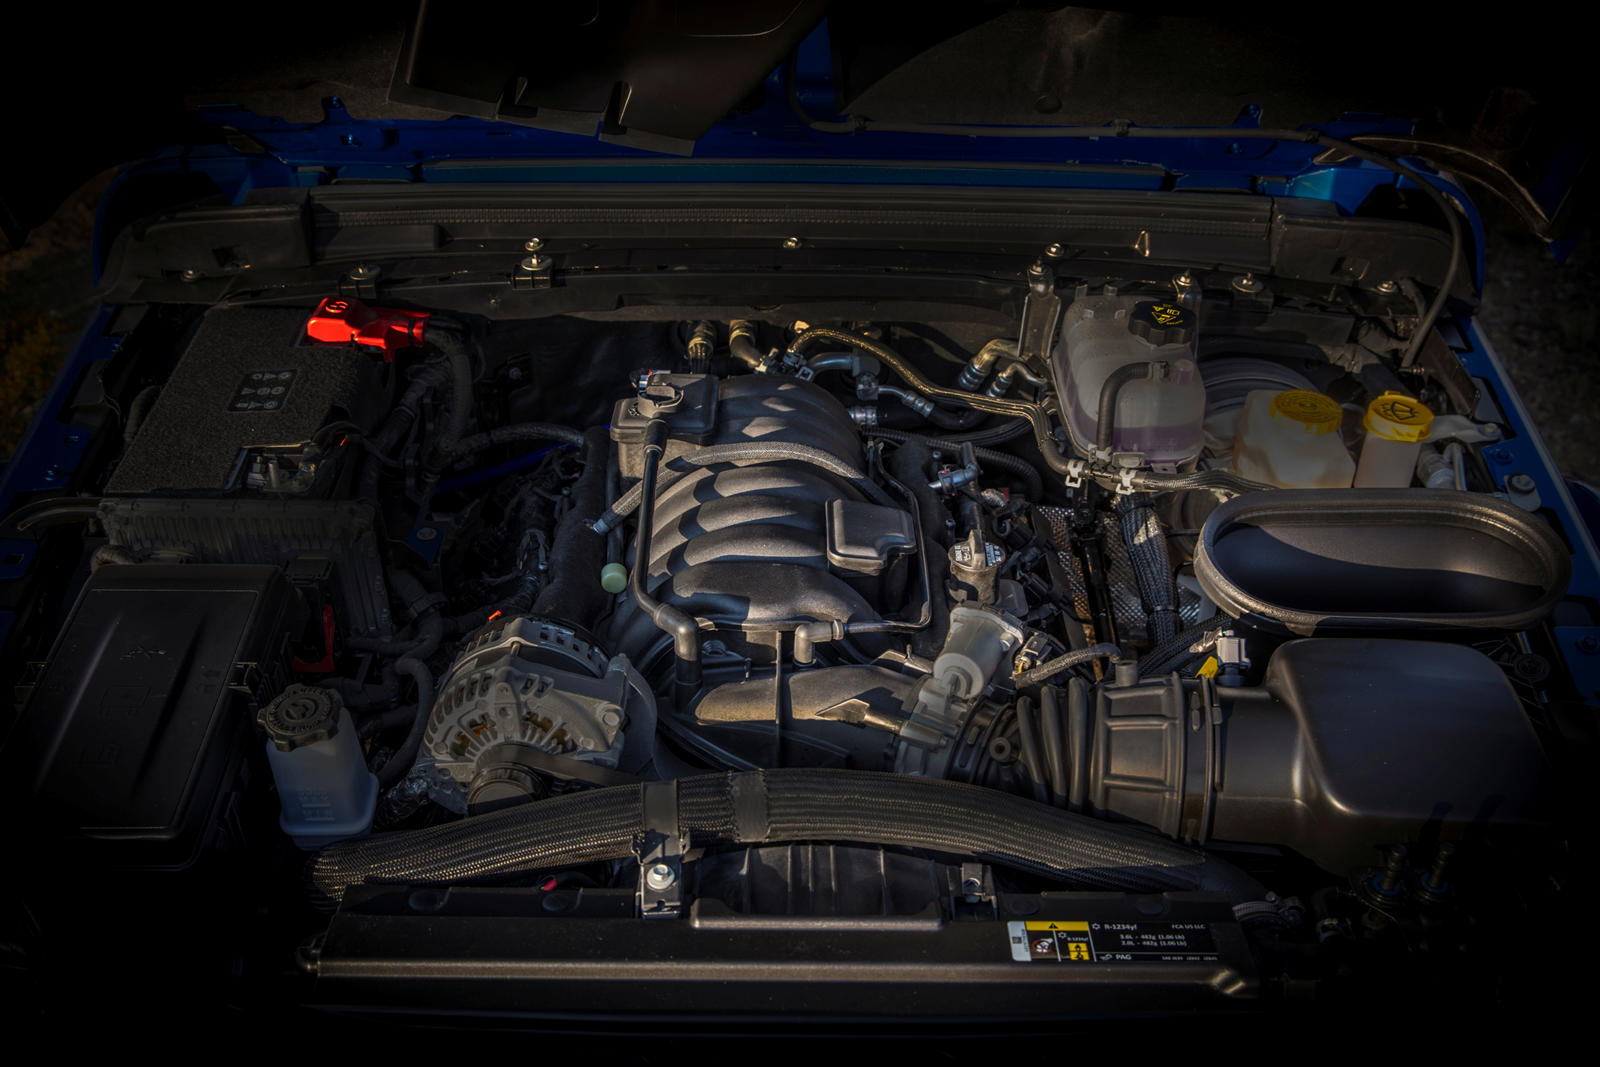 В середине 2020 года Jeep представил концепт Wrangler с двигателем Hemi V8. Вскоре после этого 2021 Jeep Wrangler Rubicon 392 официально дебютировал как самая мощная из когда-либо предлагаемых моделей Wrangler. 6,4-литровый двигатель V8 выдает 470 ло